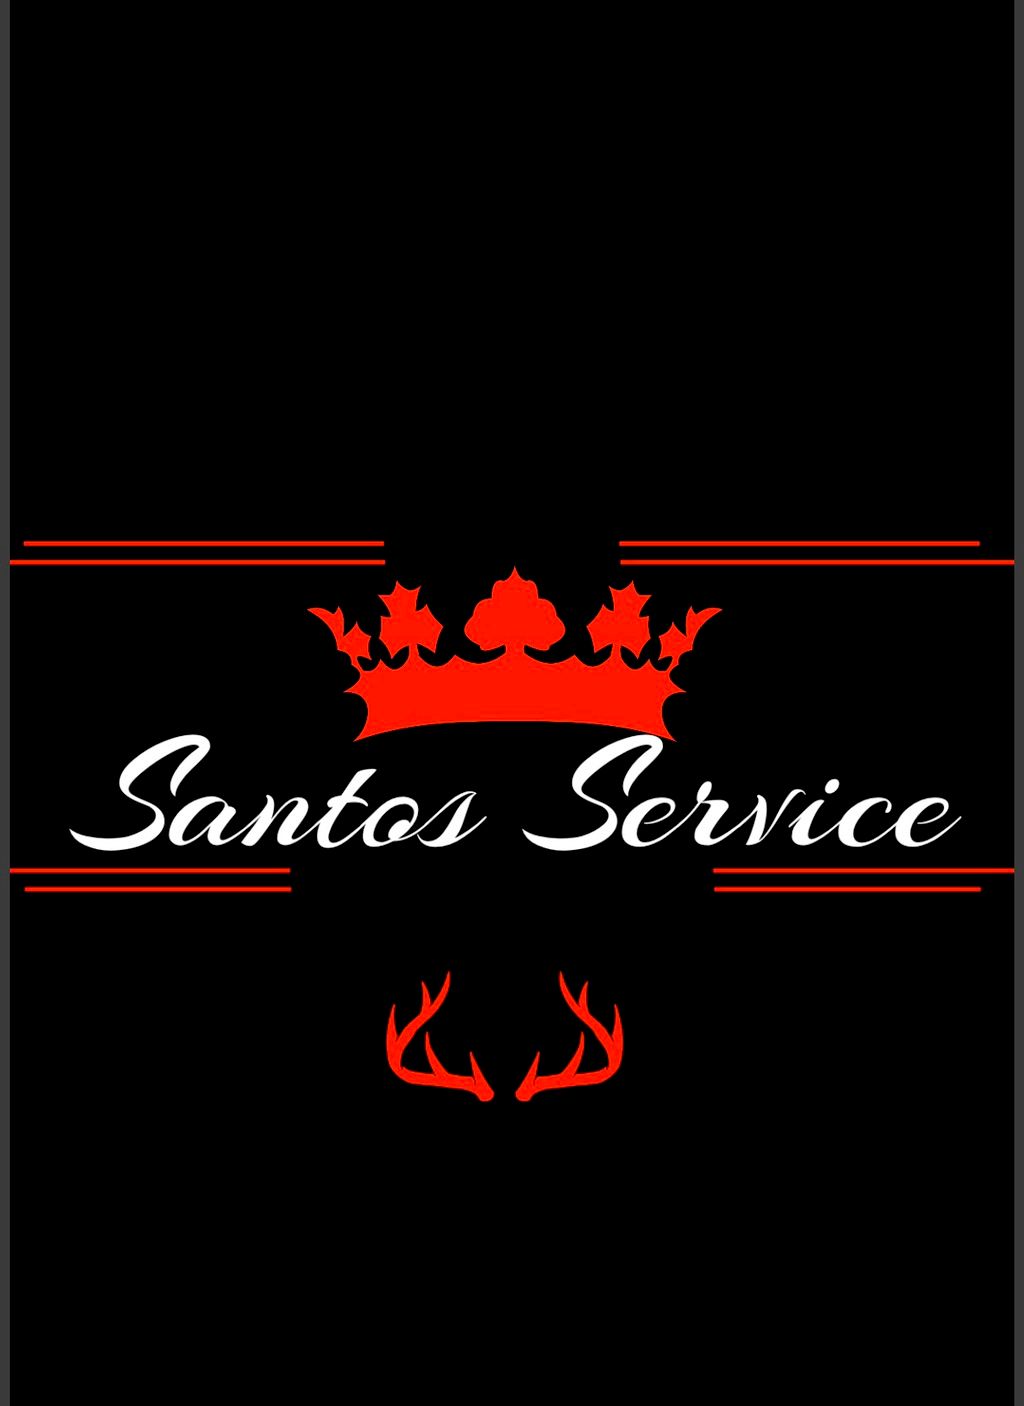 Santos Services